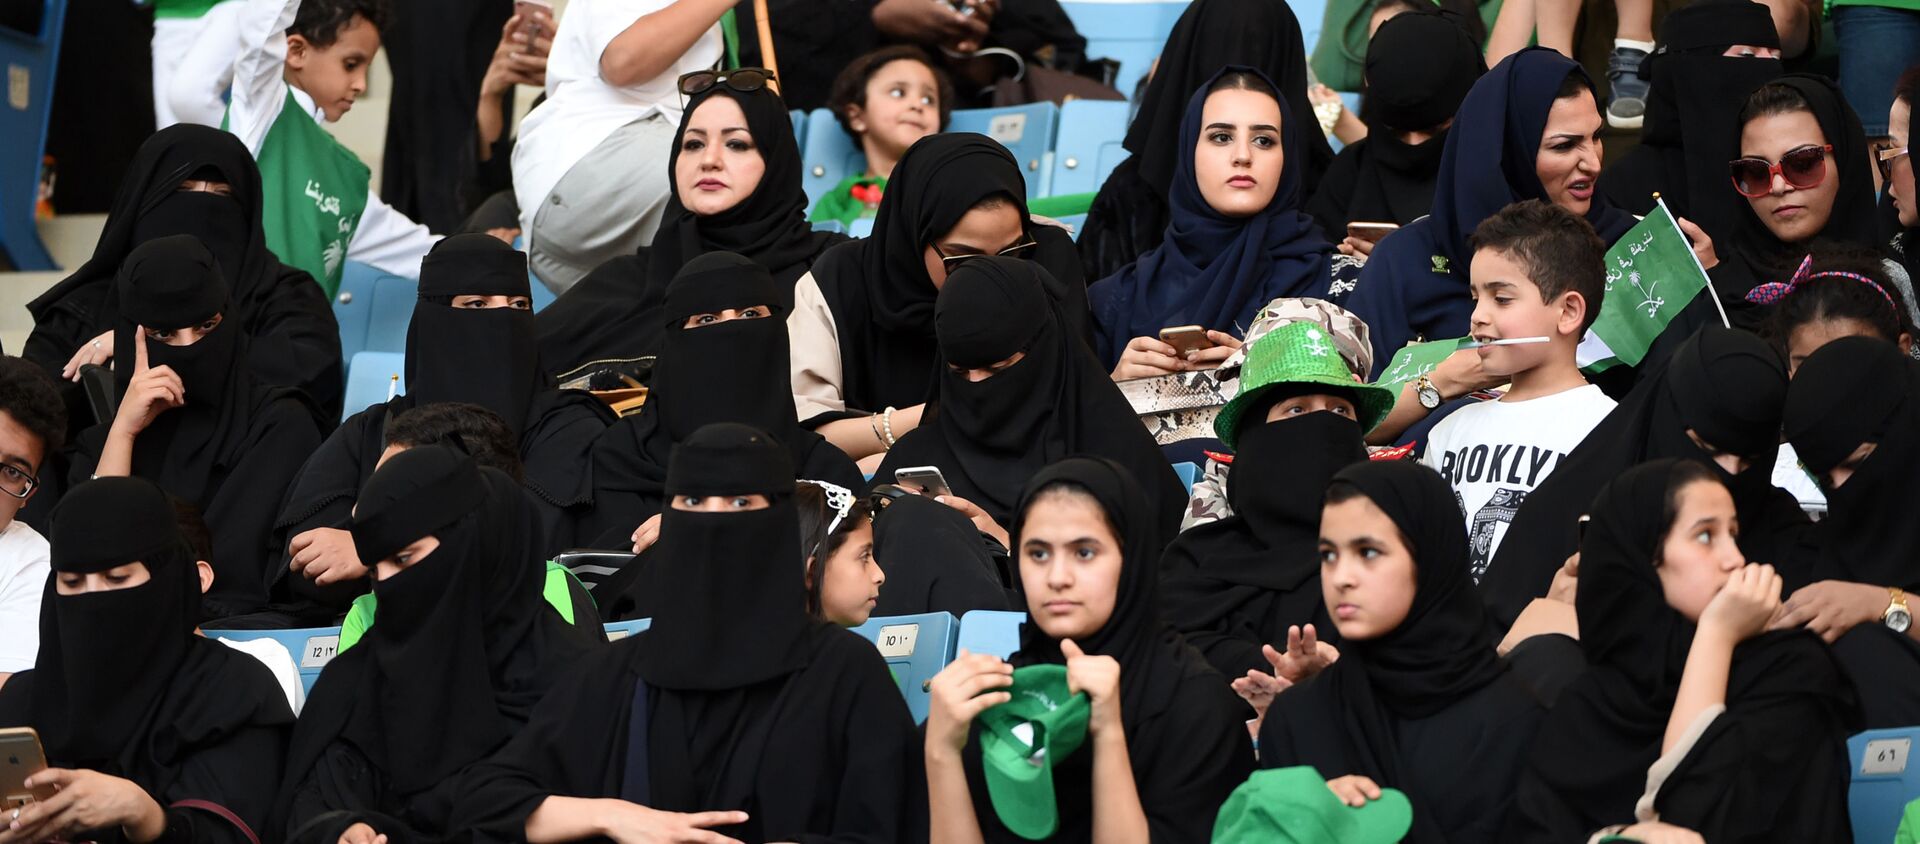 السعودية تسمح للمرأة ولأول مرة بدخول استاد رياضي في اليوم الوطني، الرياض - سبوتنيك عربي, 1920, 27.09.2021